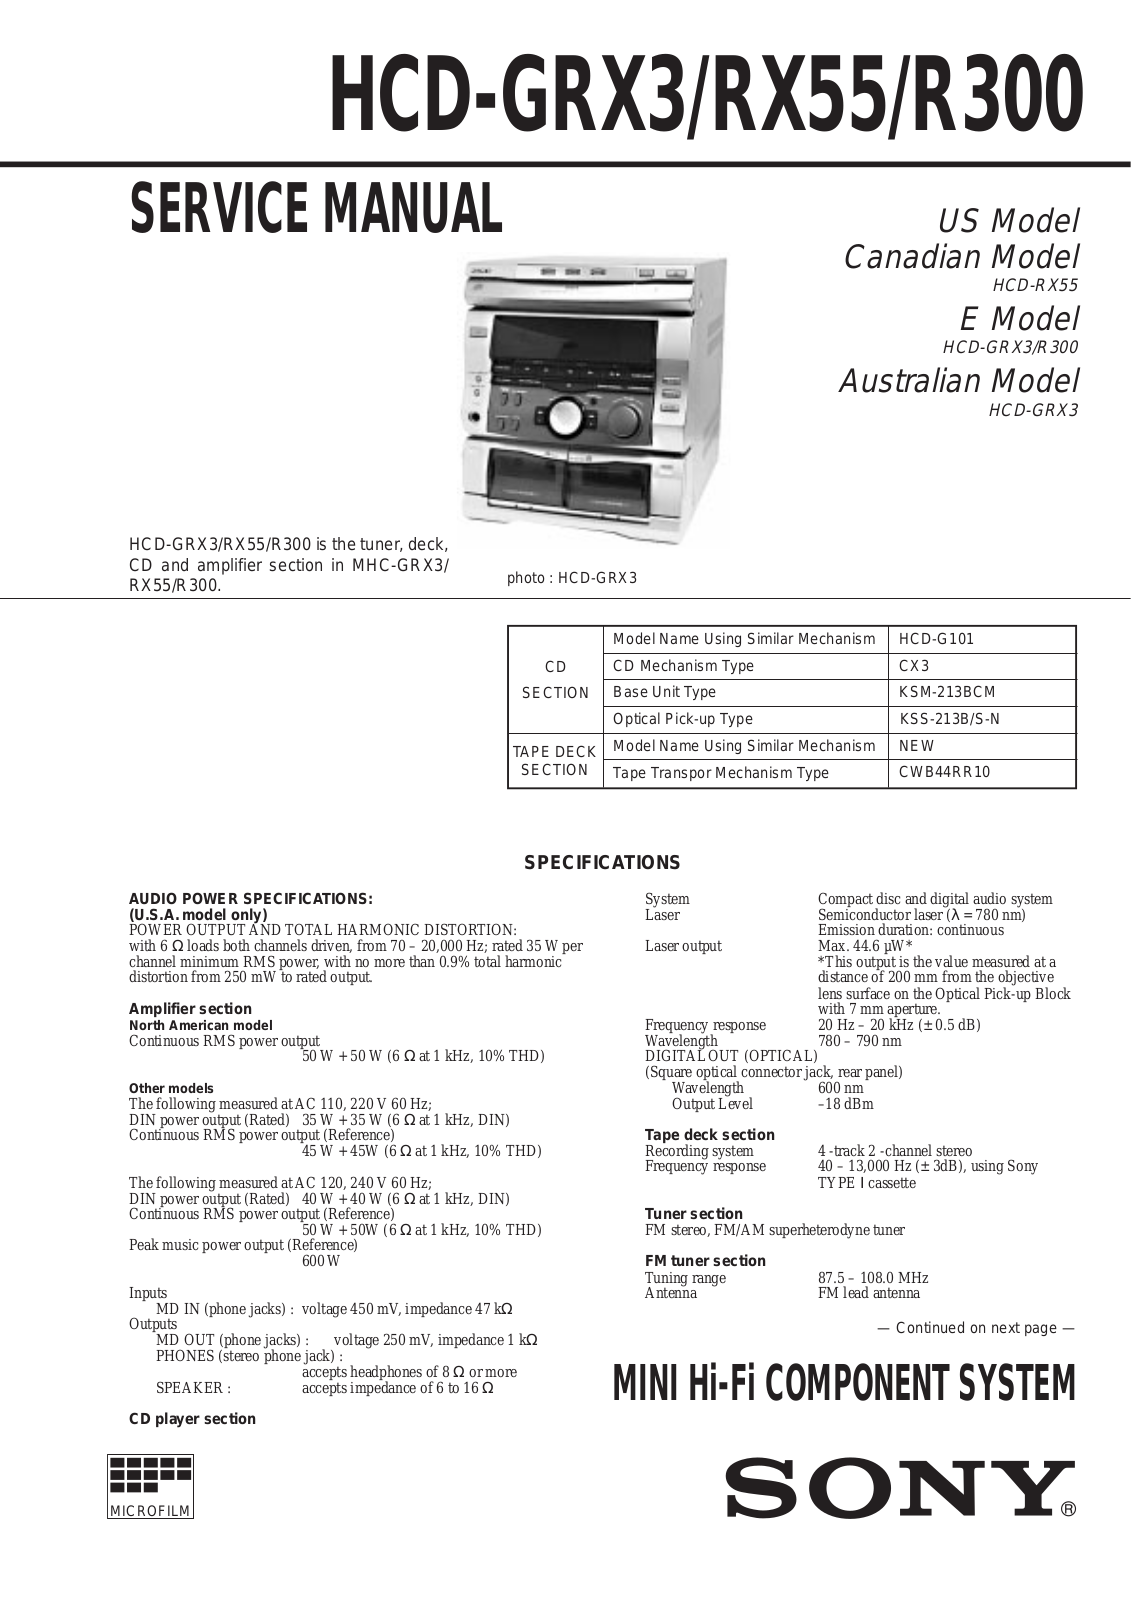 Sony HCD-GRX3, HCD-RX55, HCD-R300 Service Manual